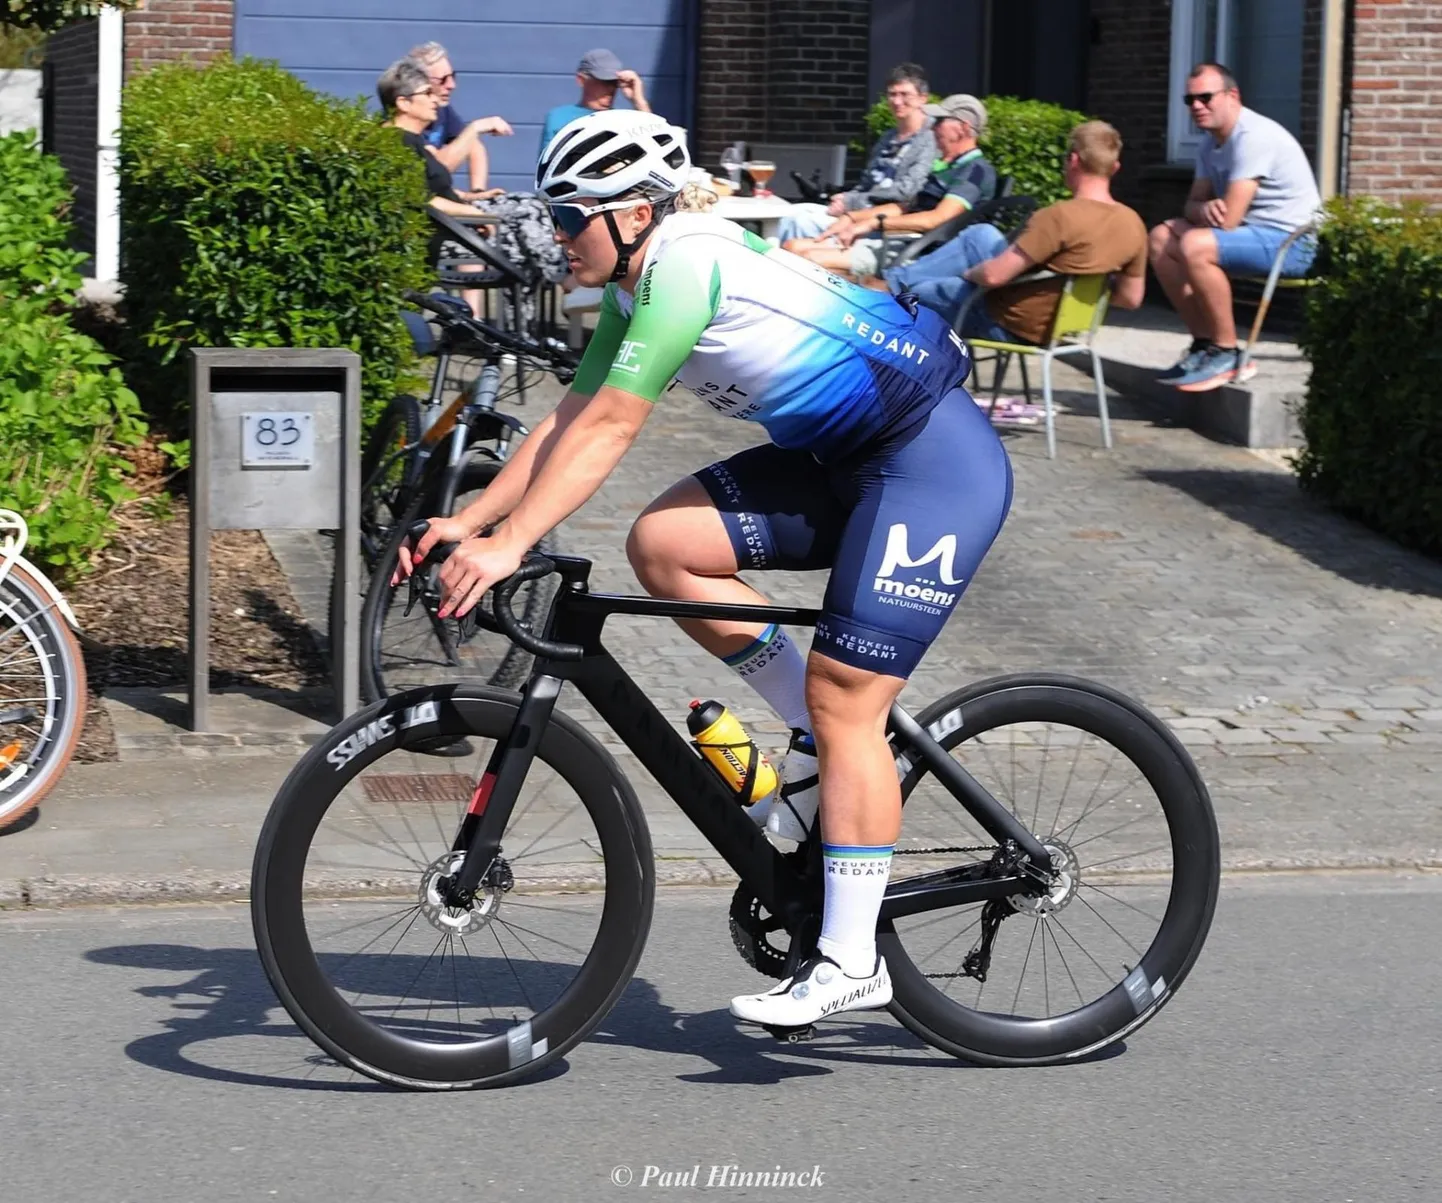 Viljandlanna Kristel Sandra Soonik vurab sellest hooajast Belgia teedel Keukens Redant Cycling Teami vormis.